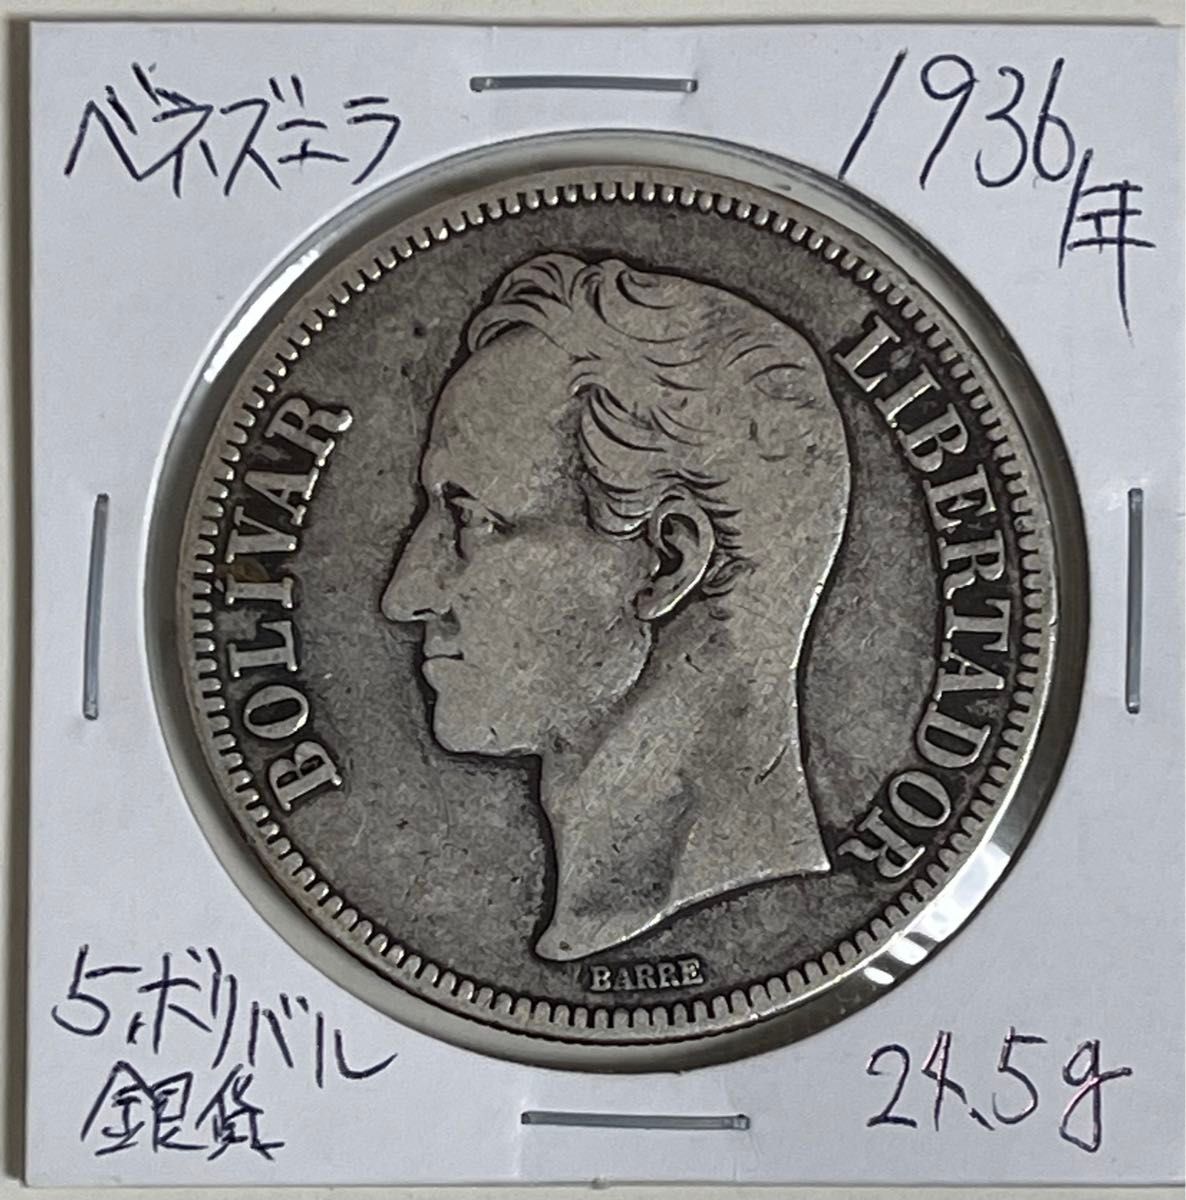 ベネズエラ 1936年 5ポリバル 大型銀貨  銀貨 アンティークコイン 古銭 本物 希少 貿易銀 早い者勝ち 南米